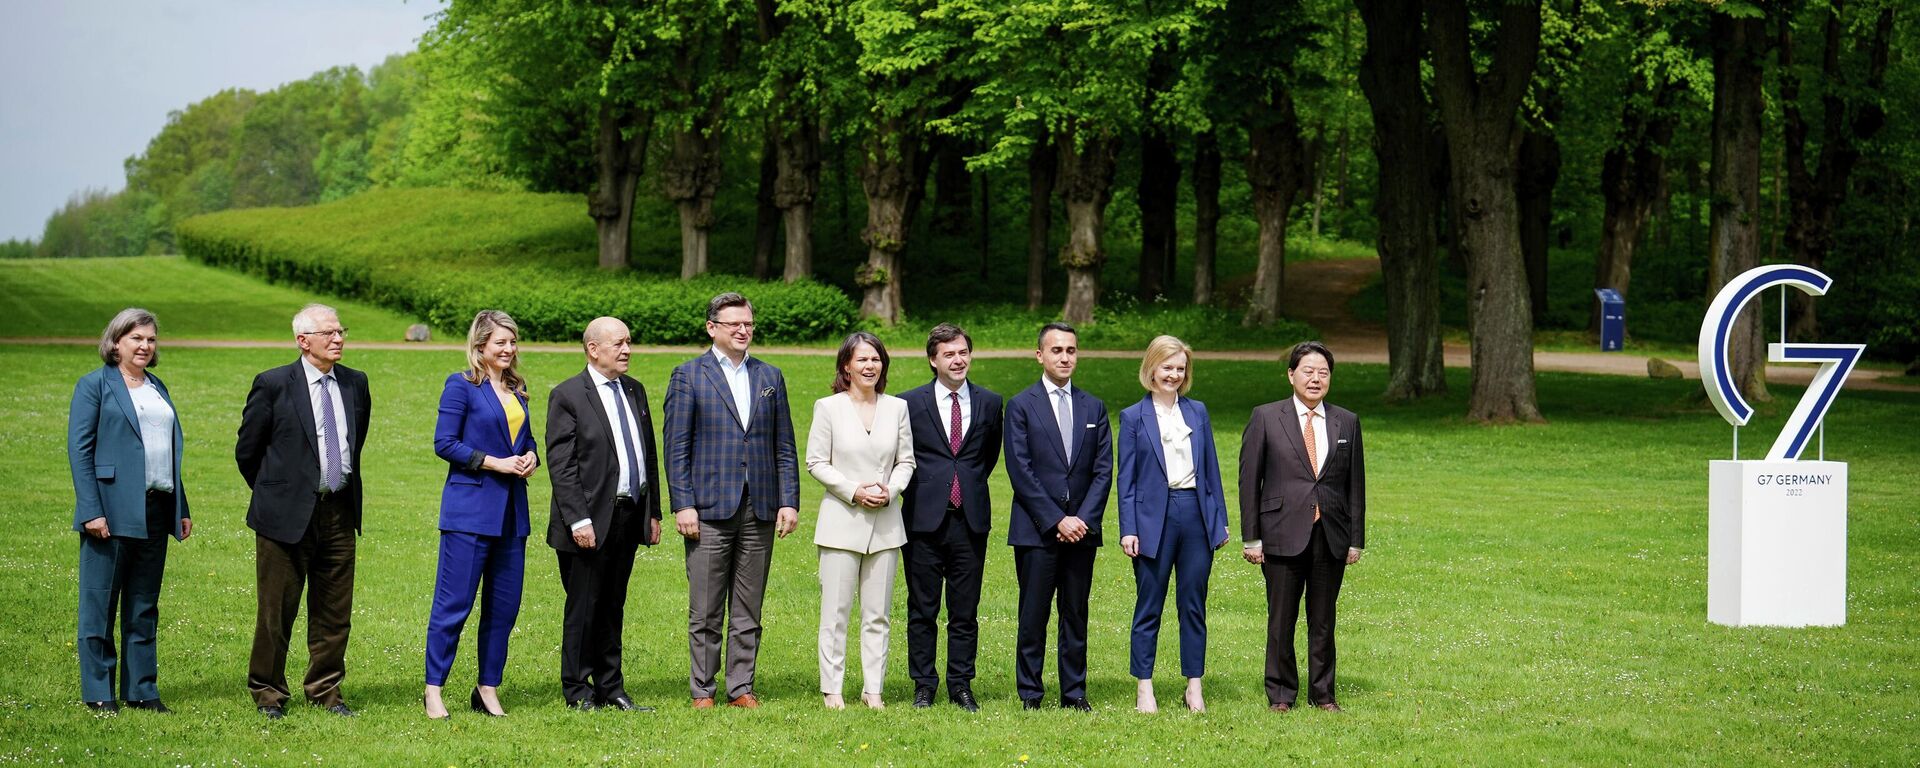 Групповое фото на встрече министров иностранных дел G7 в Германии - Sputnik 日本, 1920, 14.05.2022